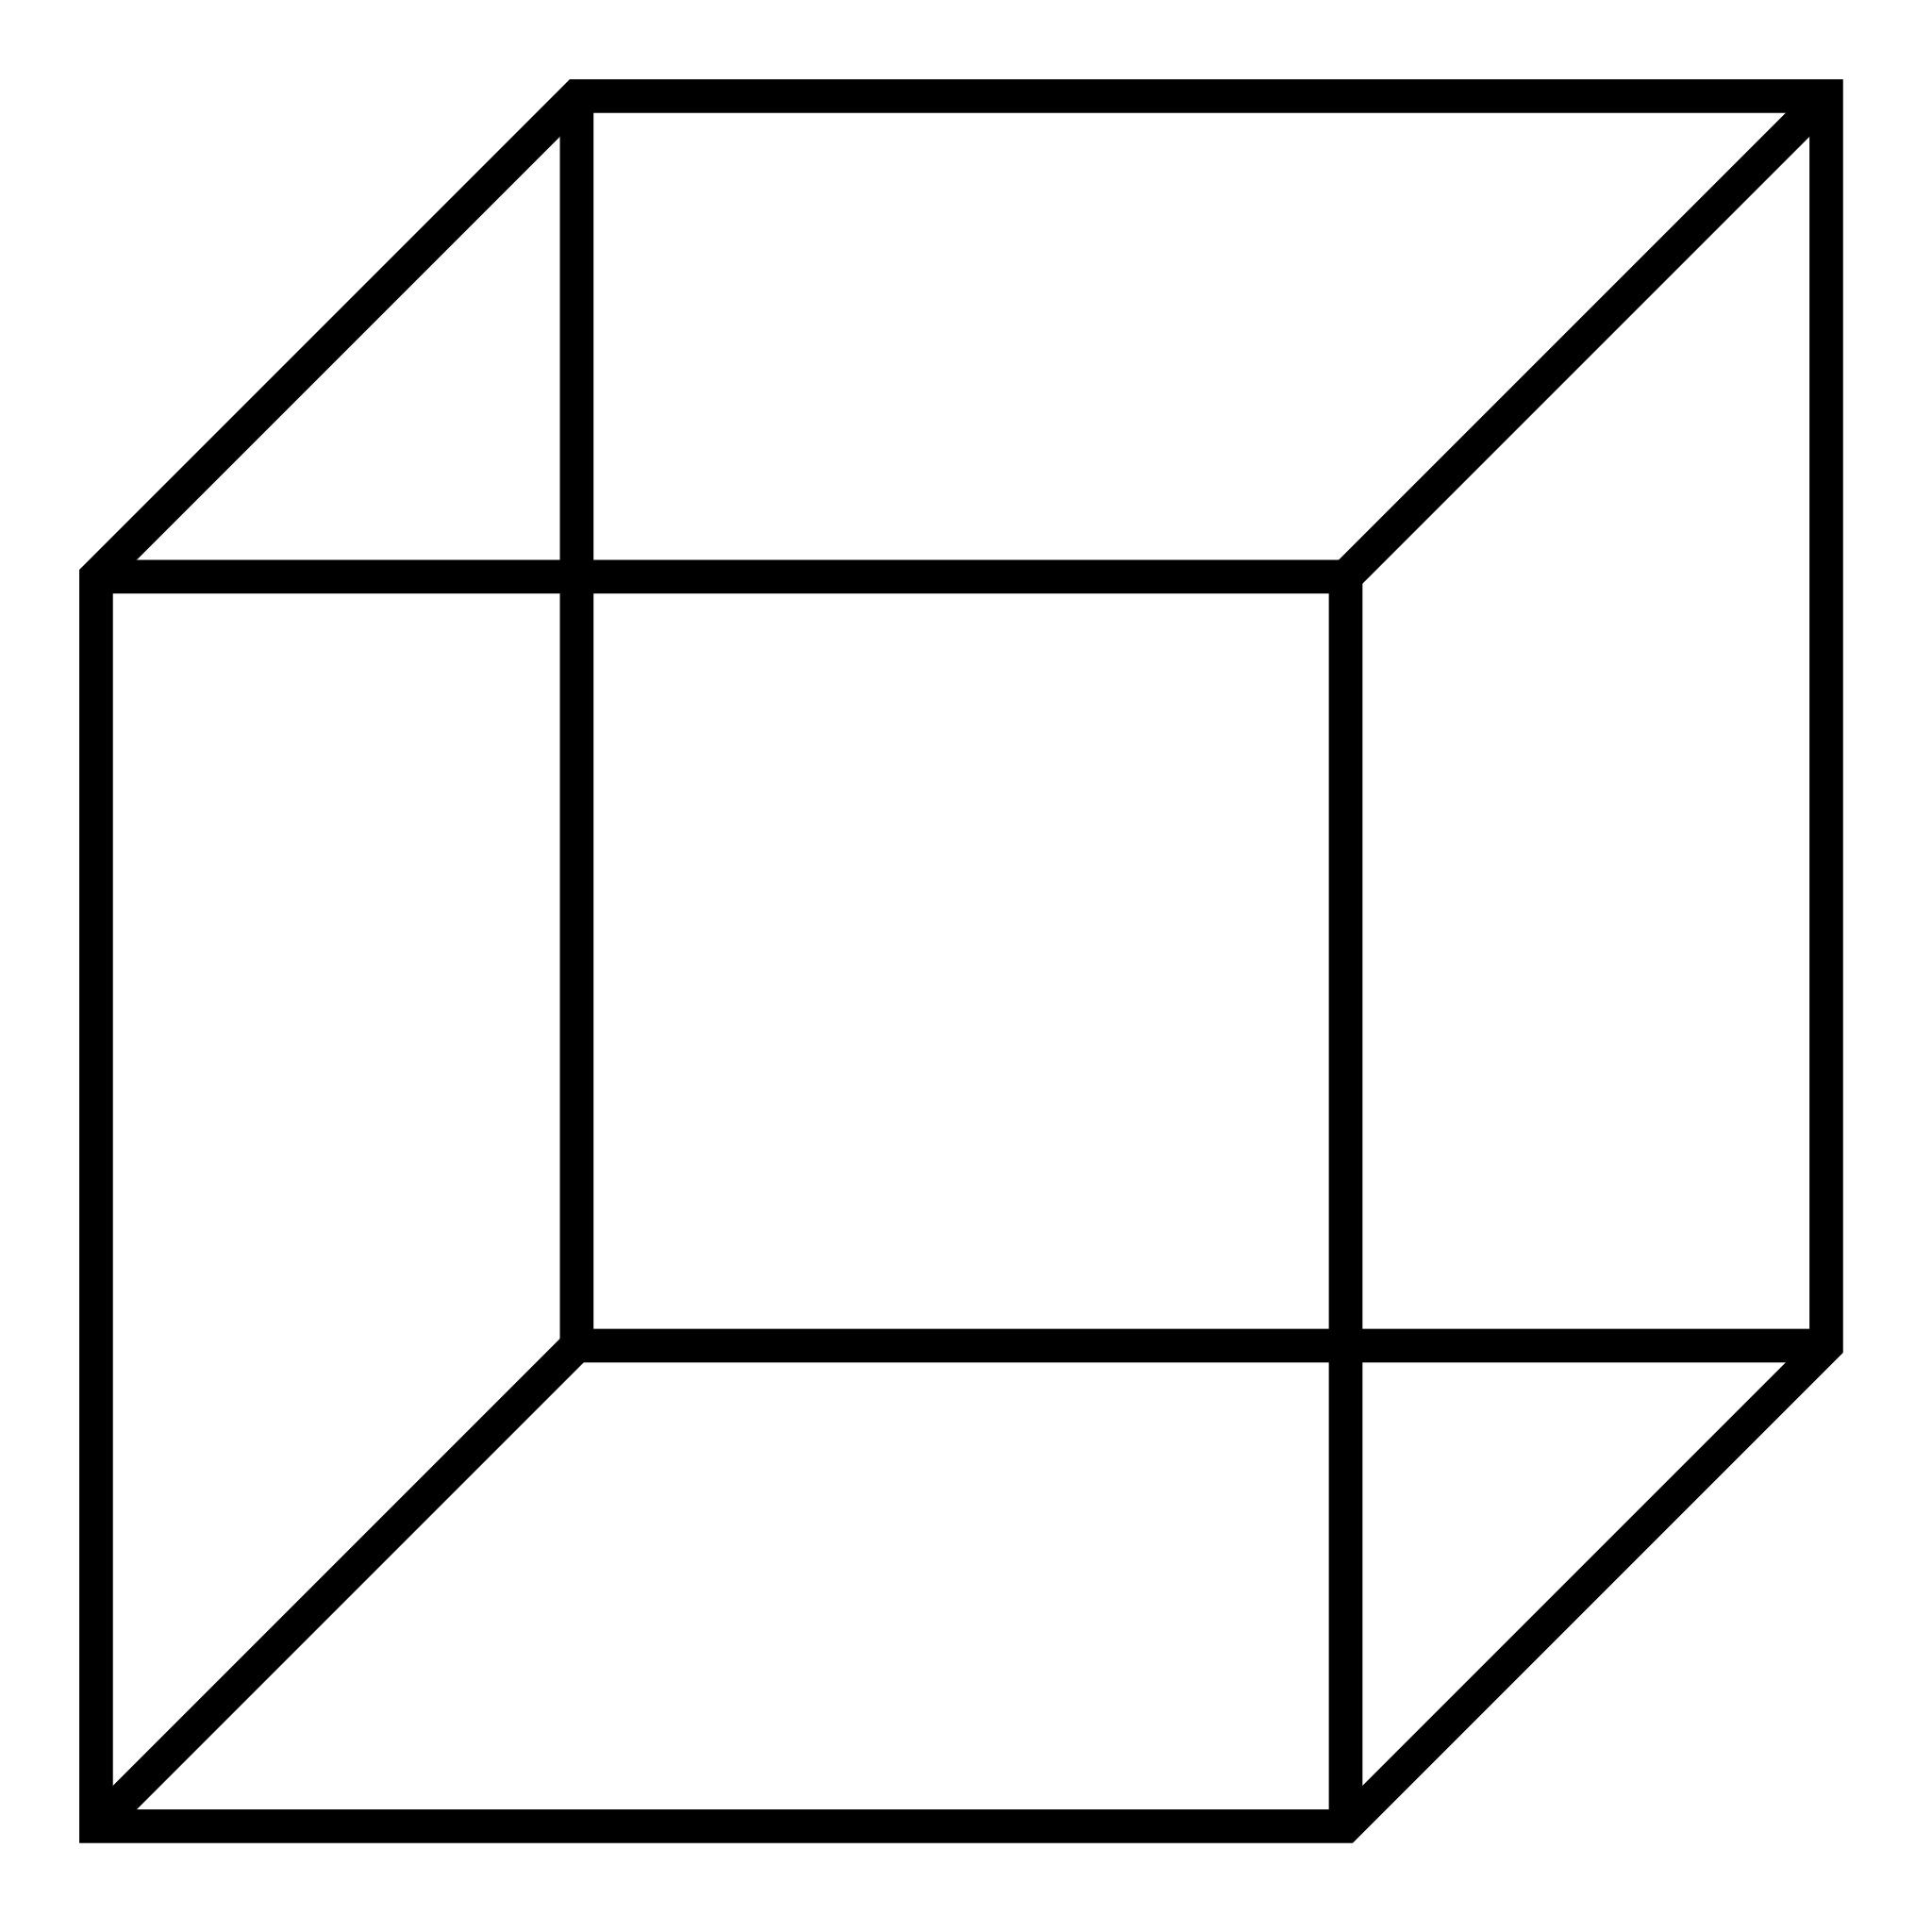 как выглядит куб для